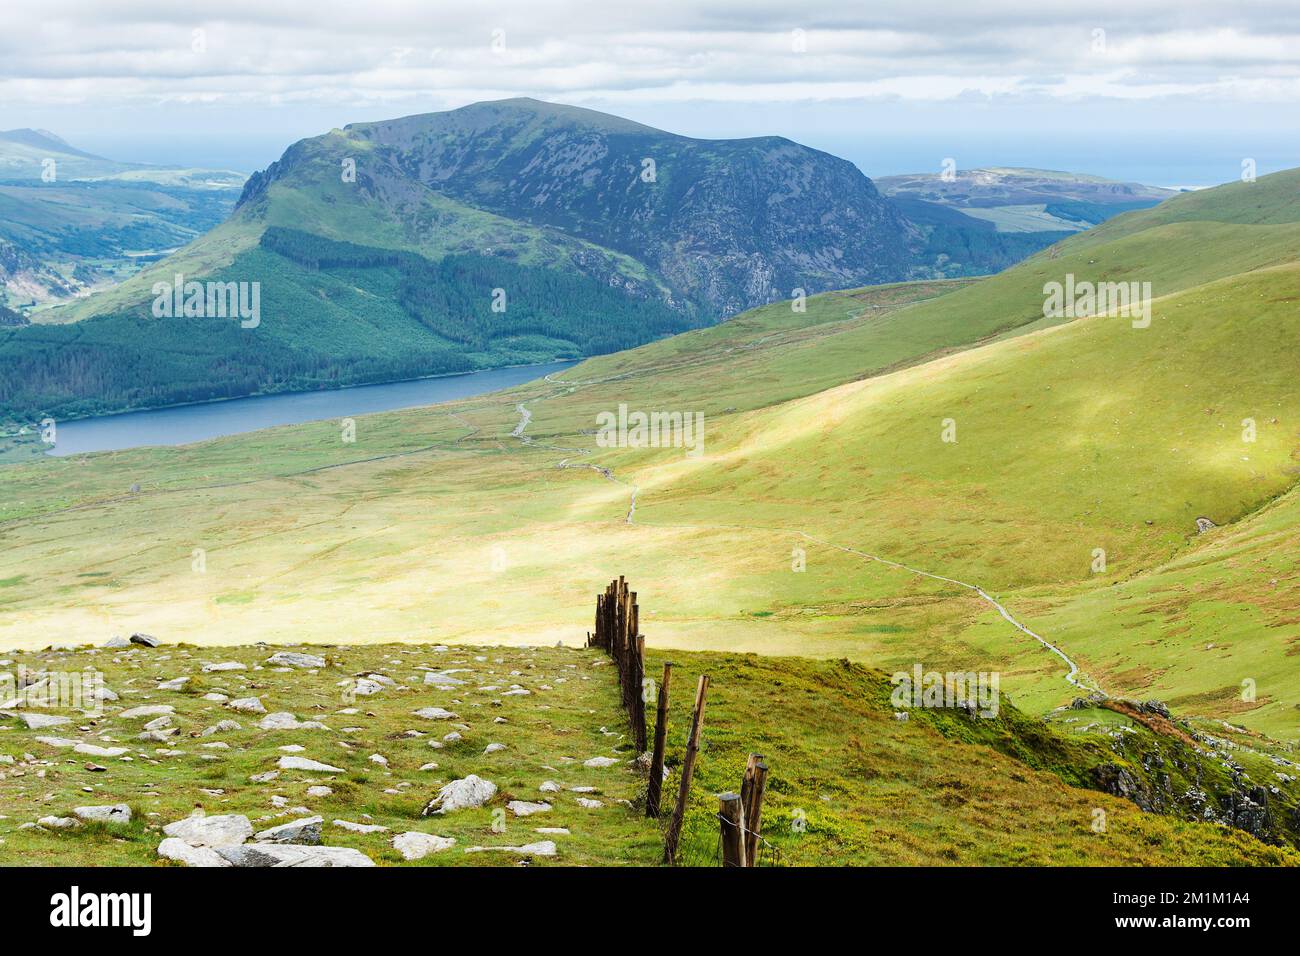 Klettern auf den Snowdon in Nordwales. Blick auf die Hügel und Berge, das grüne Gras und die wunderschönen blauen Seen auf dem Weg zum Gipfel. Stockfoto